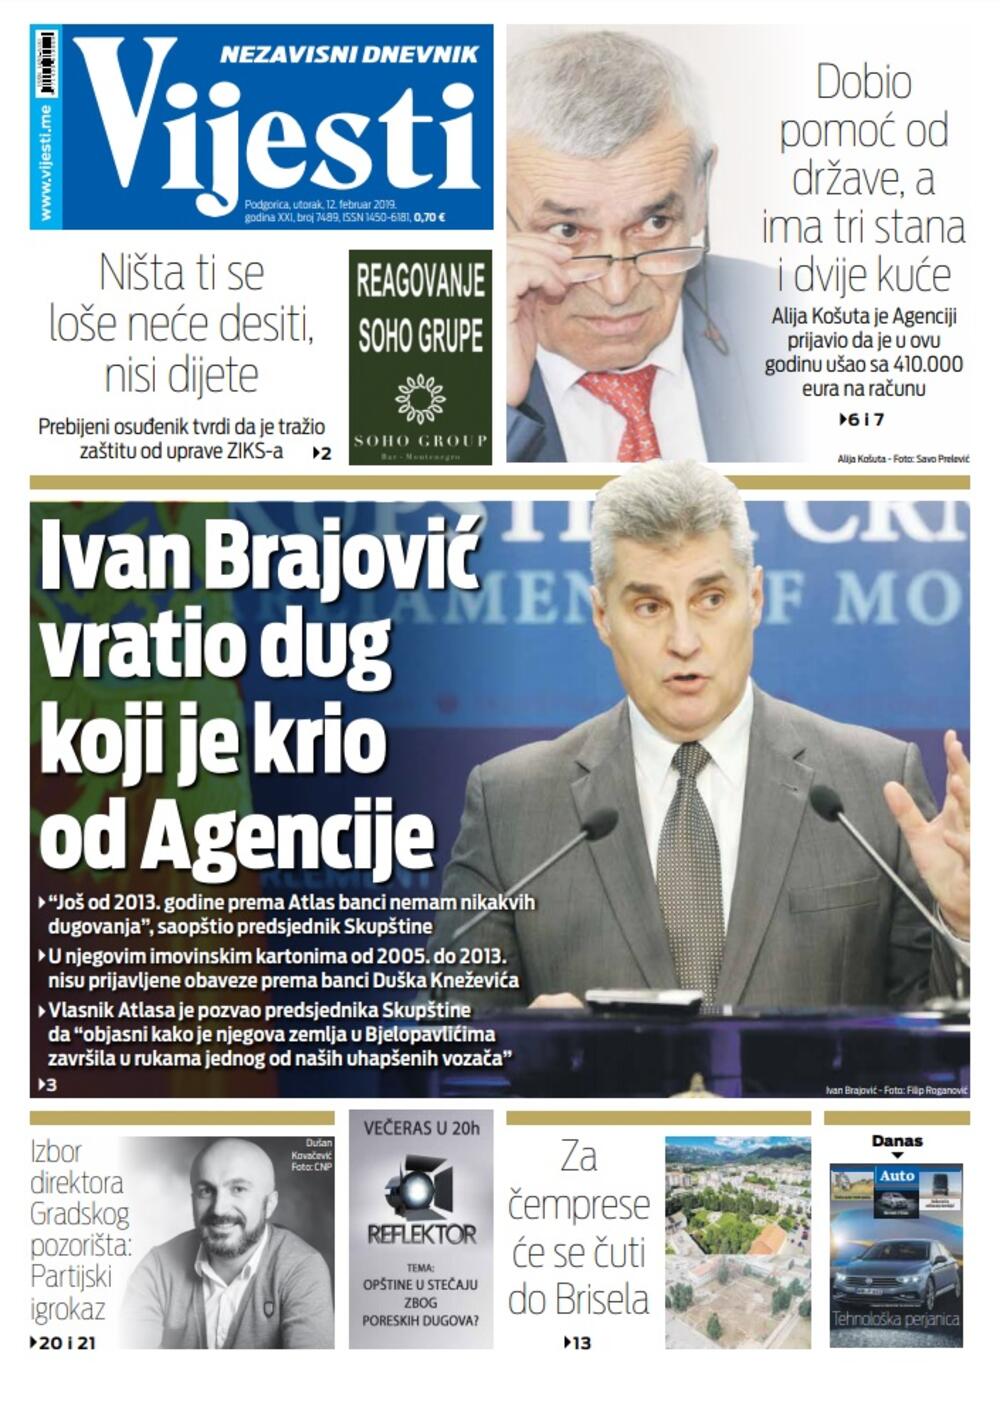 Naslovna strana "Vijesti" za 12. februar